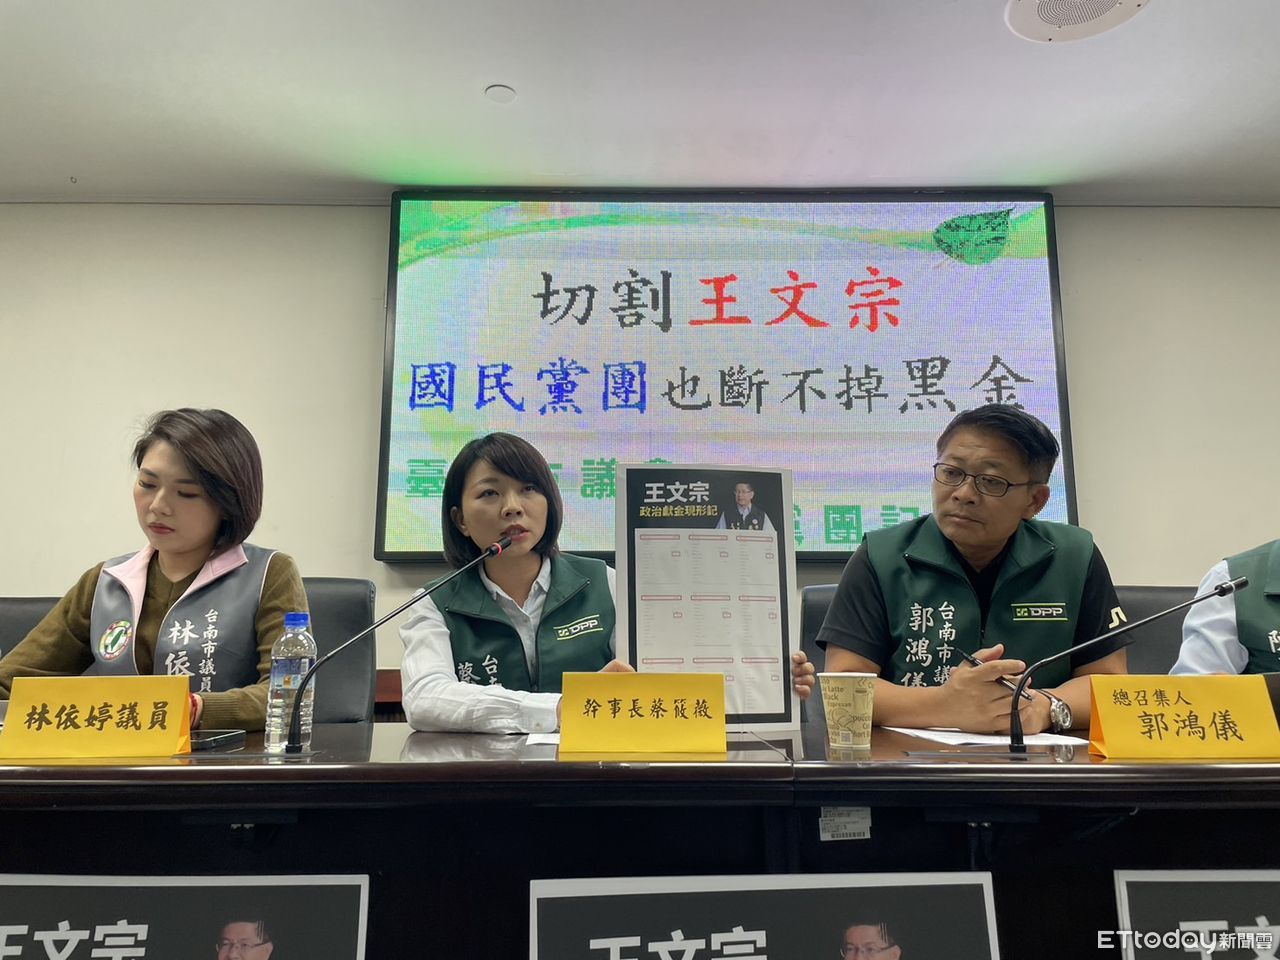 學甲槍擊案王文宗遭羈押　台南綠營批國民黨切割「做賊喊抓賊」 | ETto